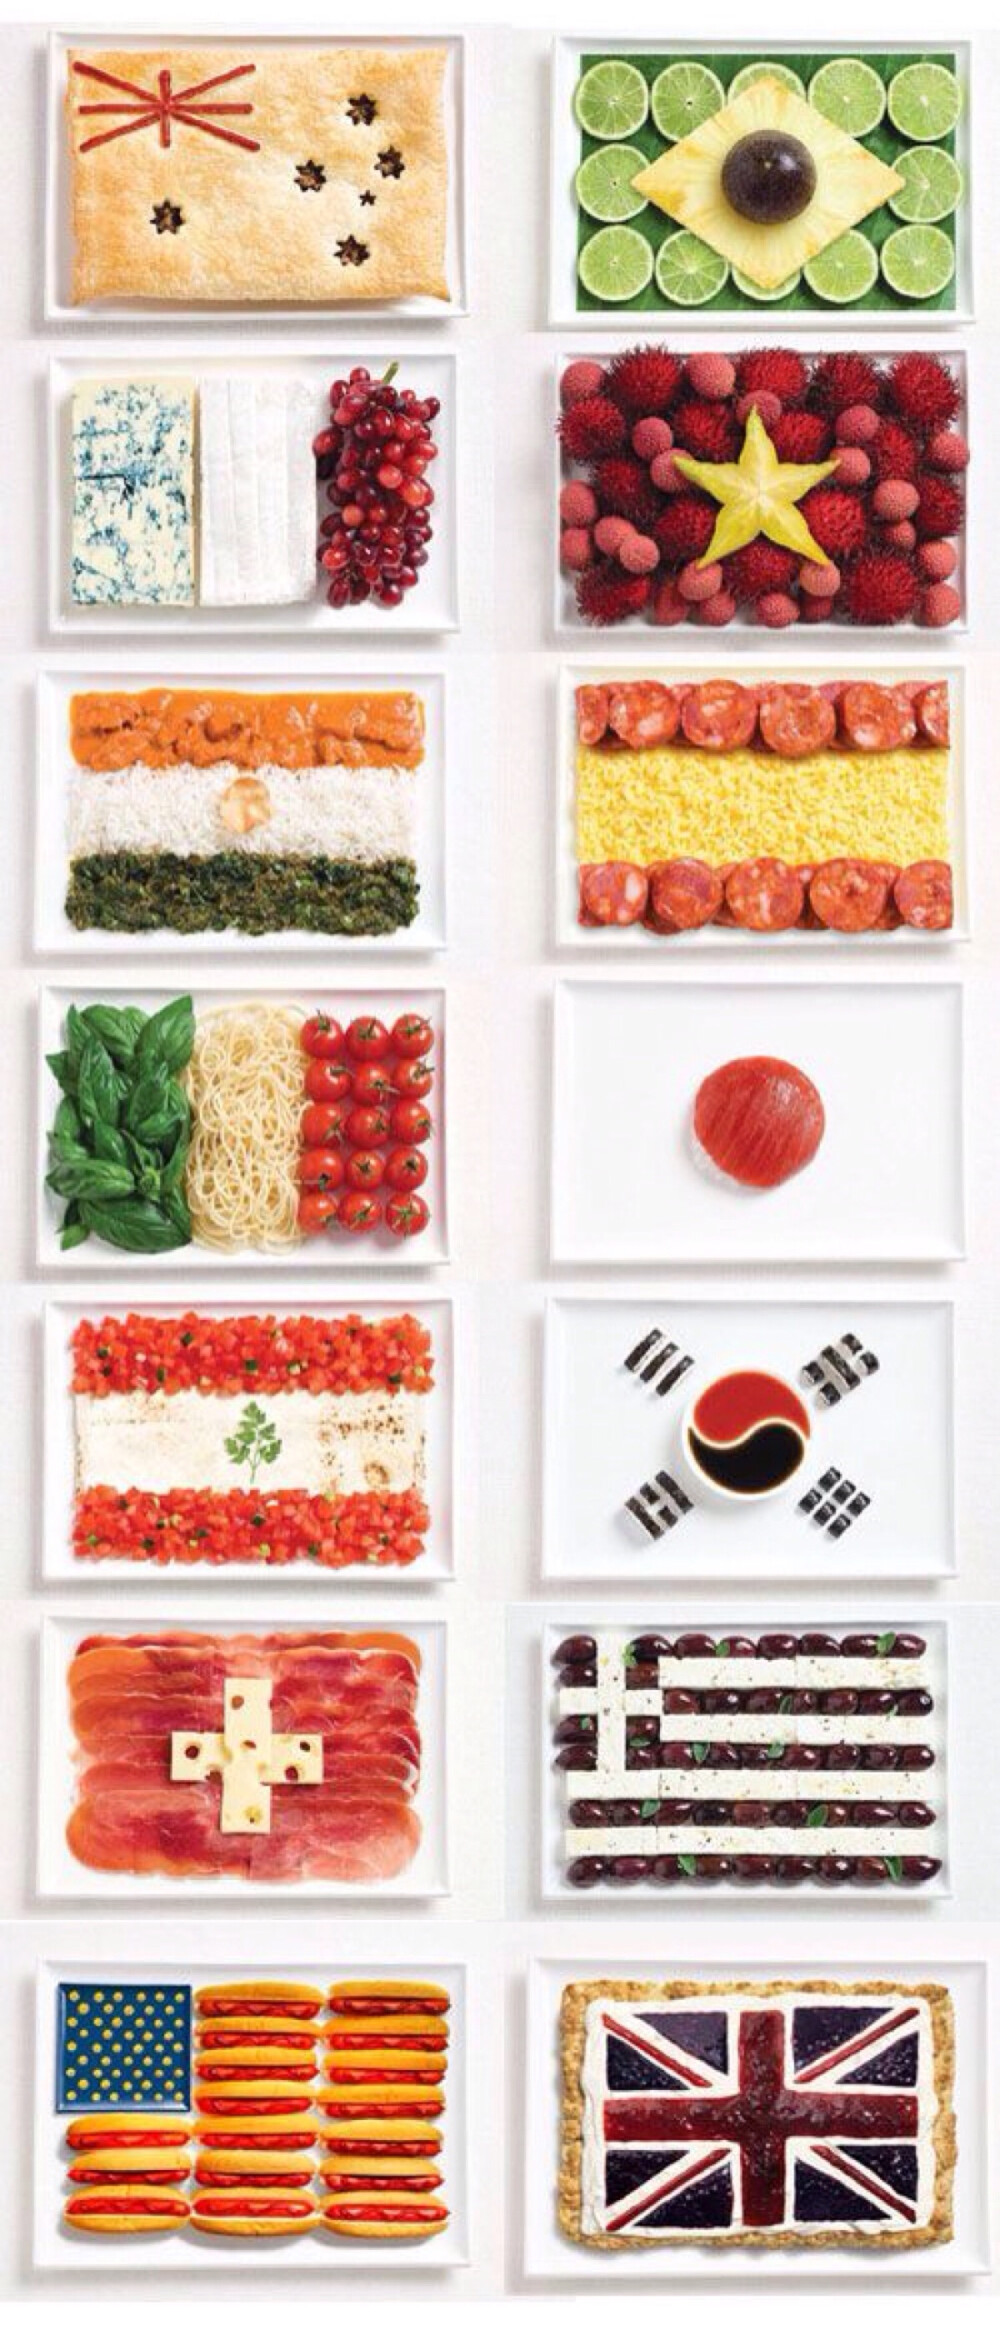 用食材做国旗 好有创意呢 这个是小一点的图哦 中国国旗可以用杨桃和火龙果做哦